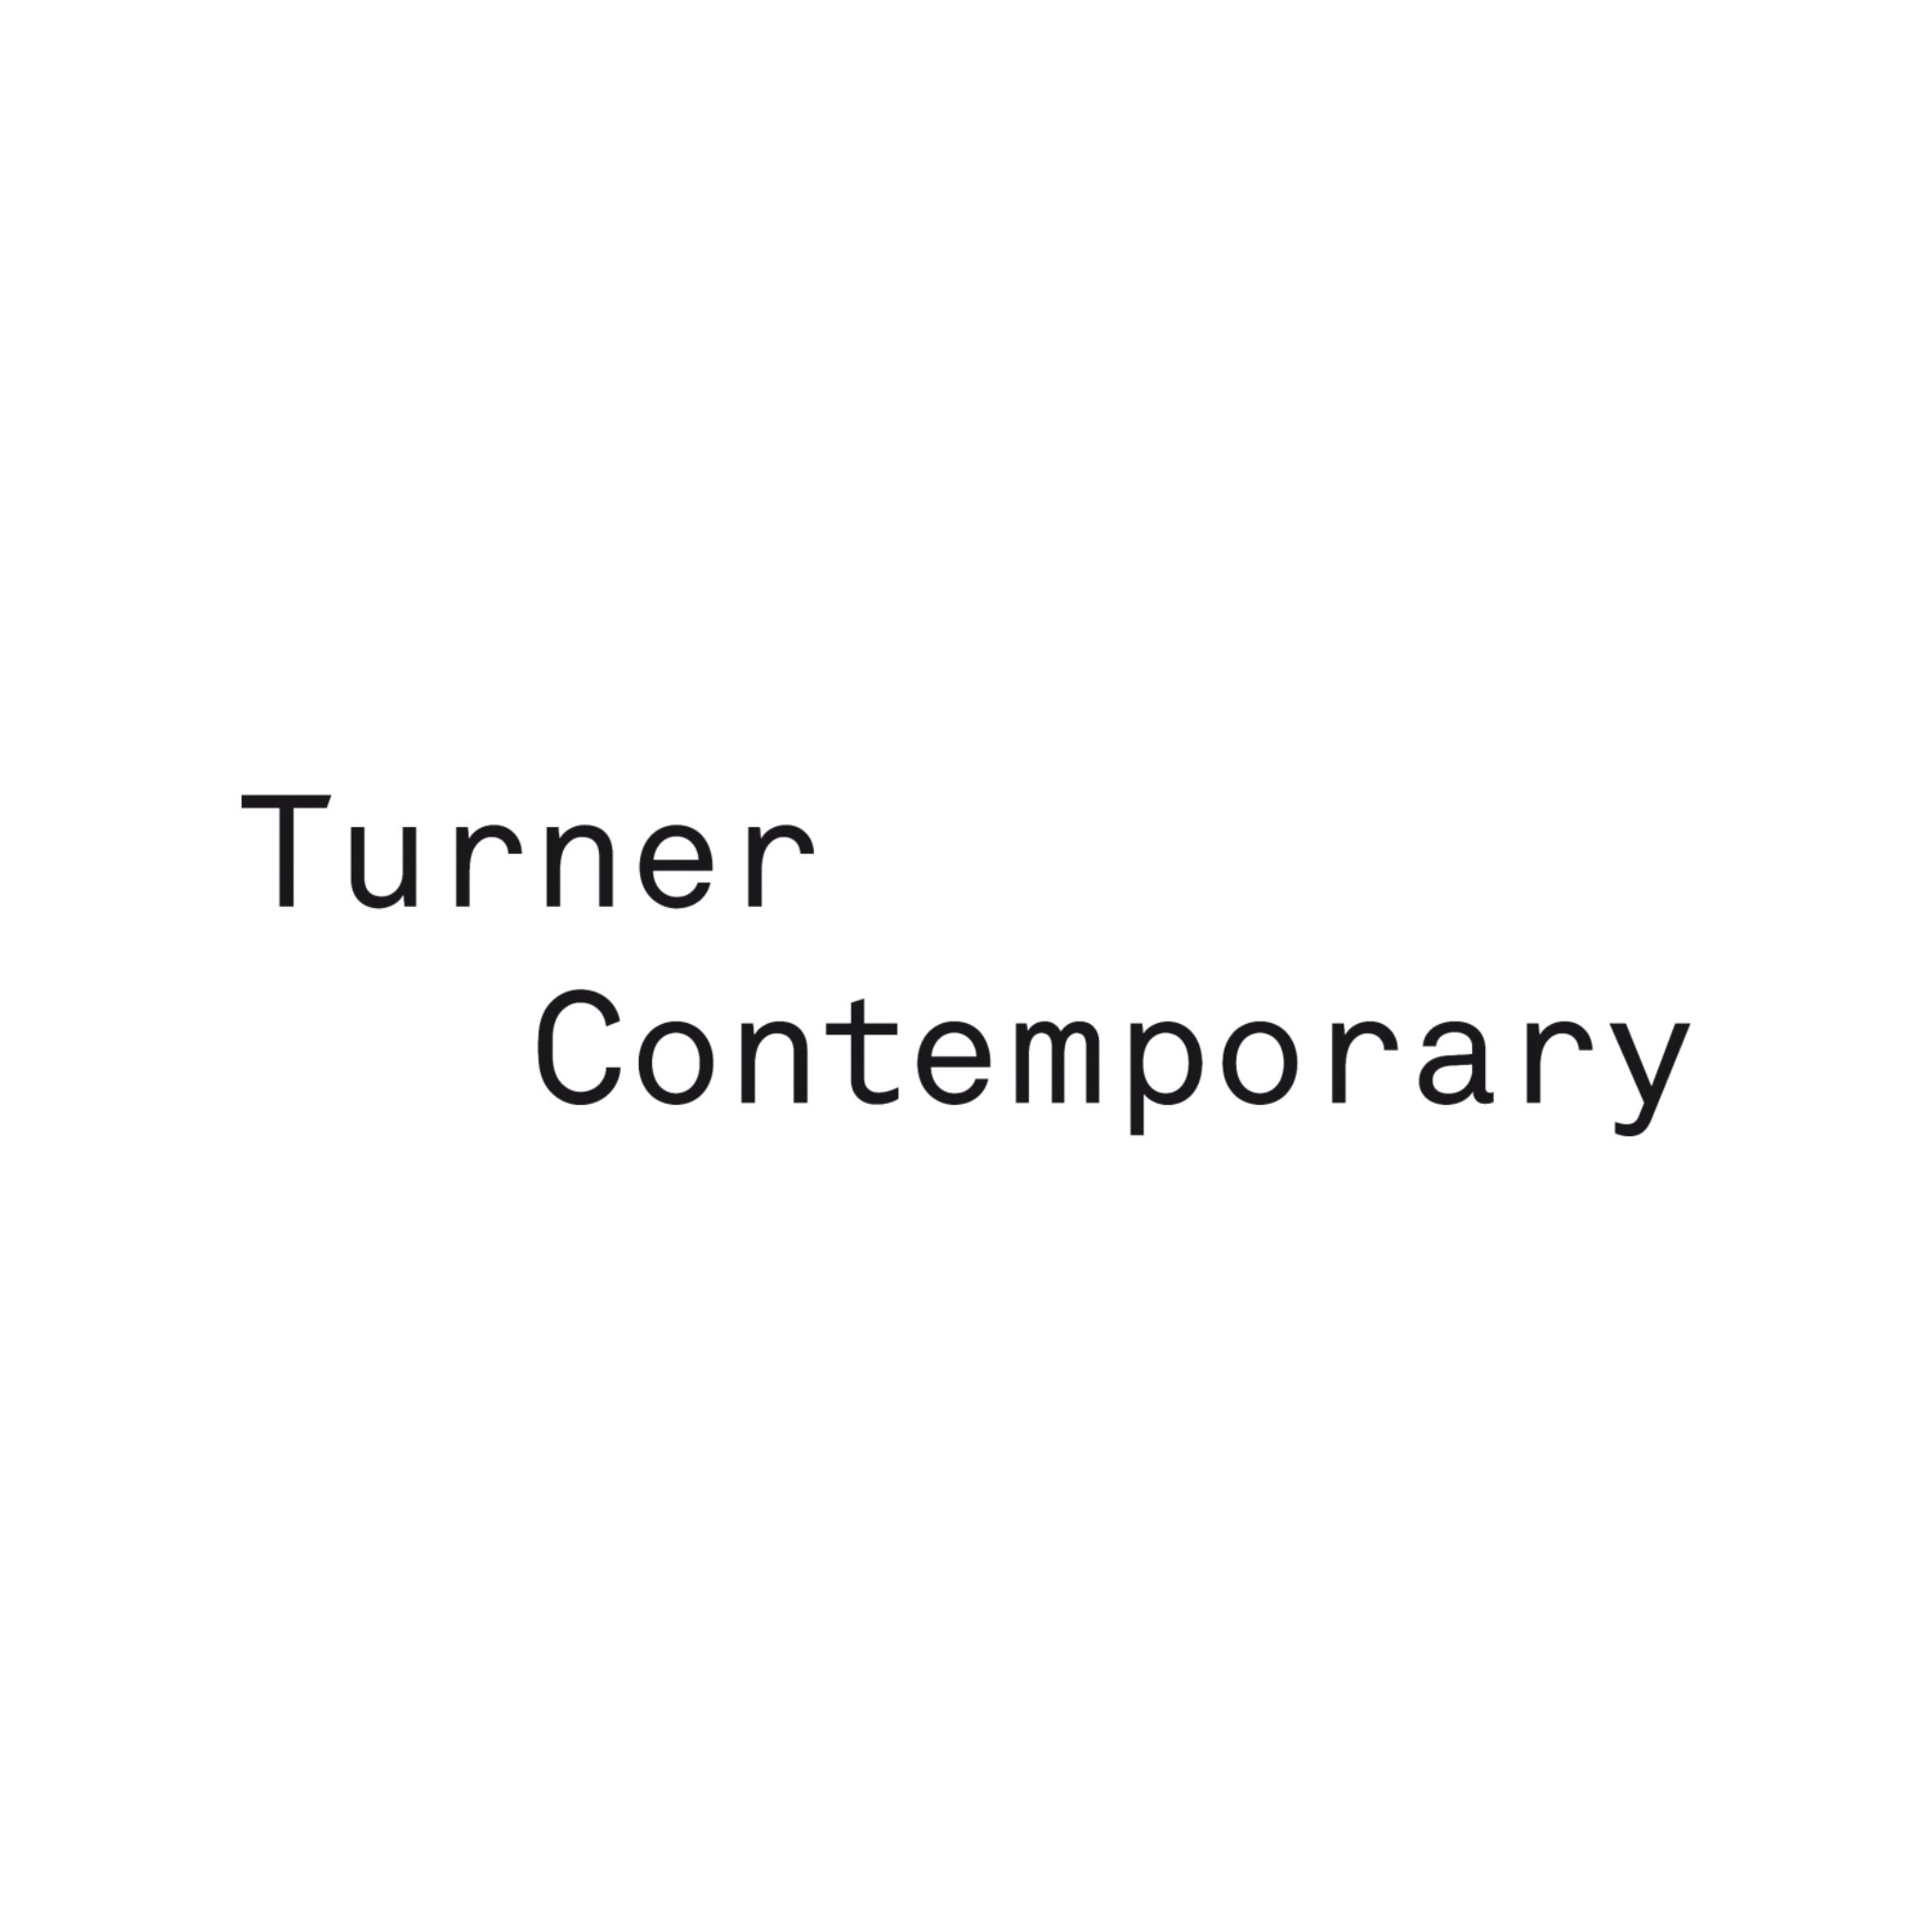 Turner Contemporary logo.jpg